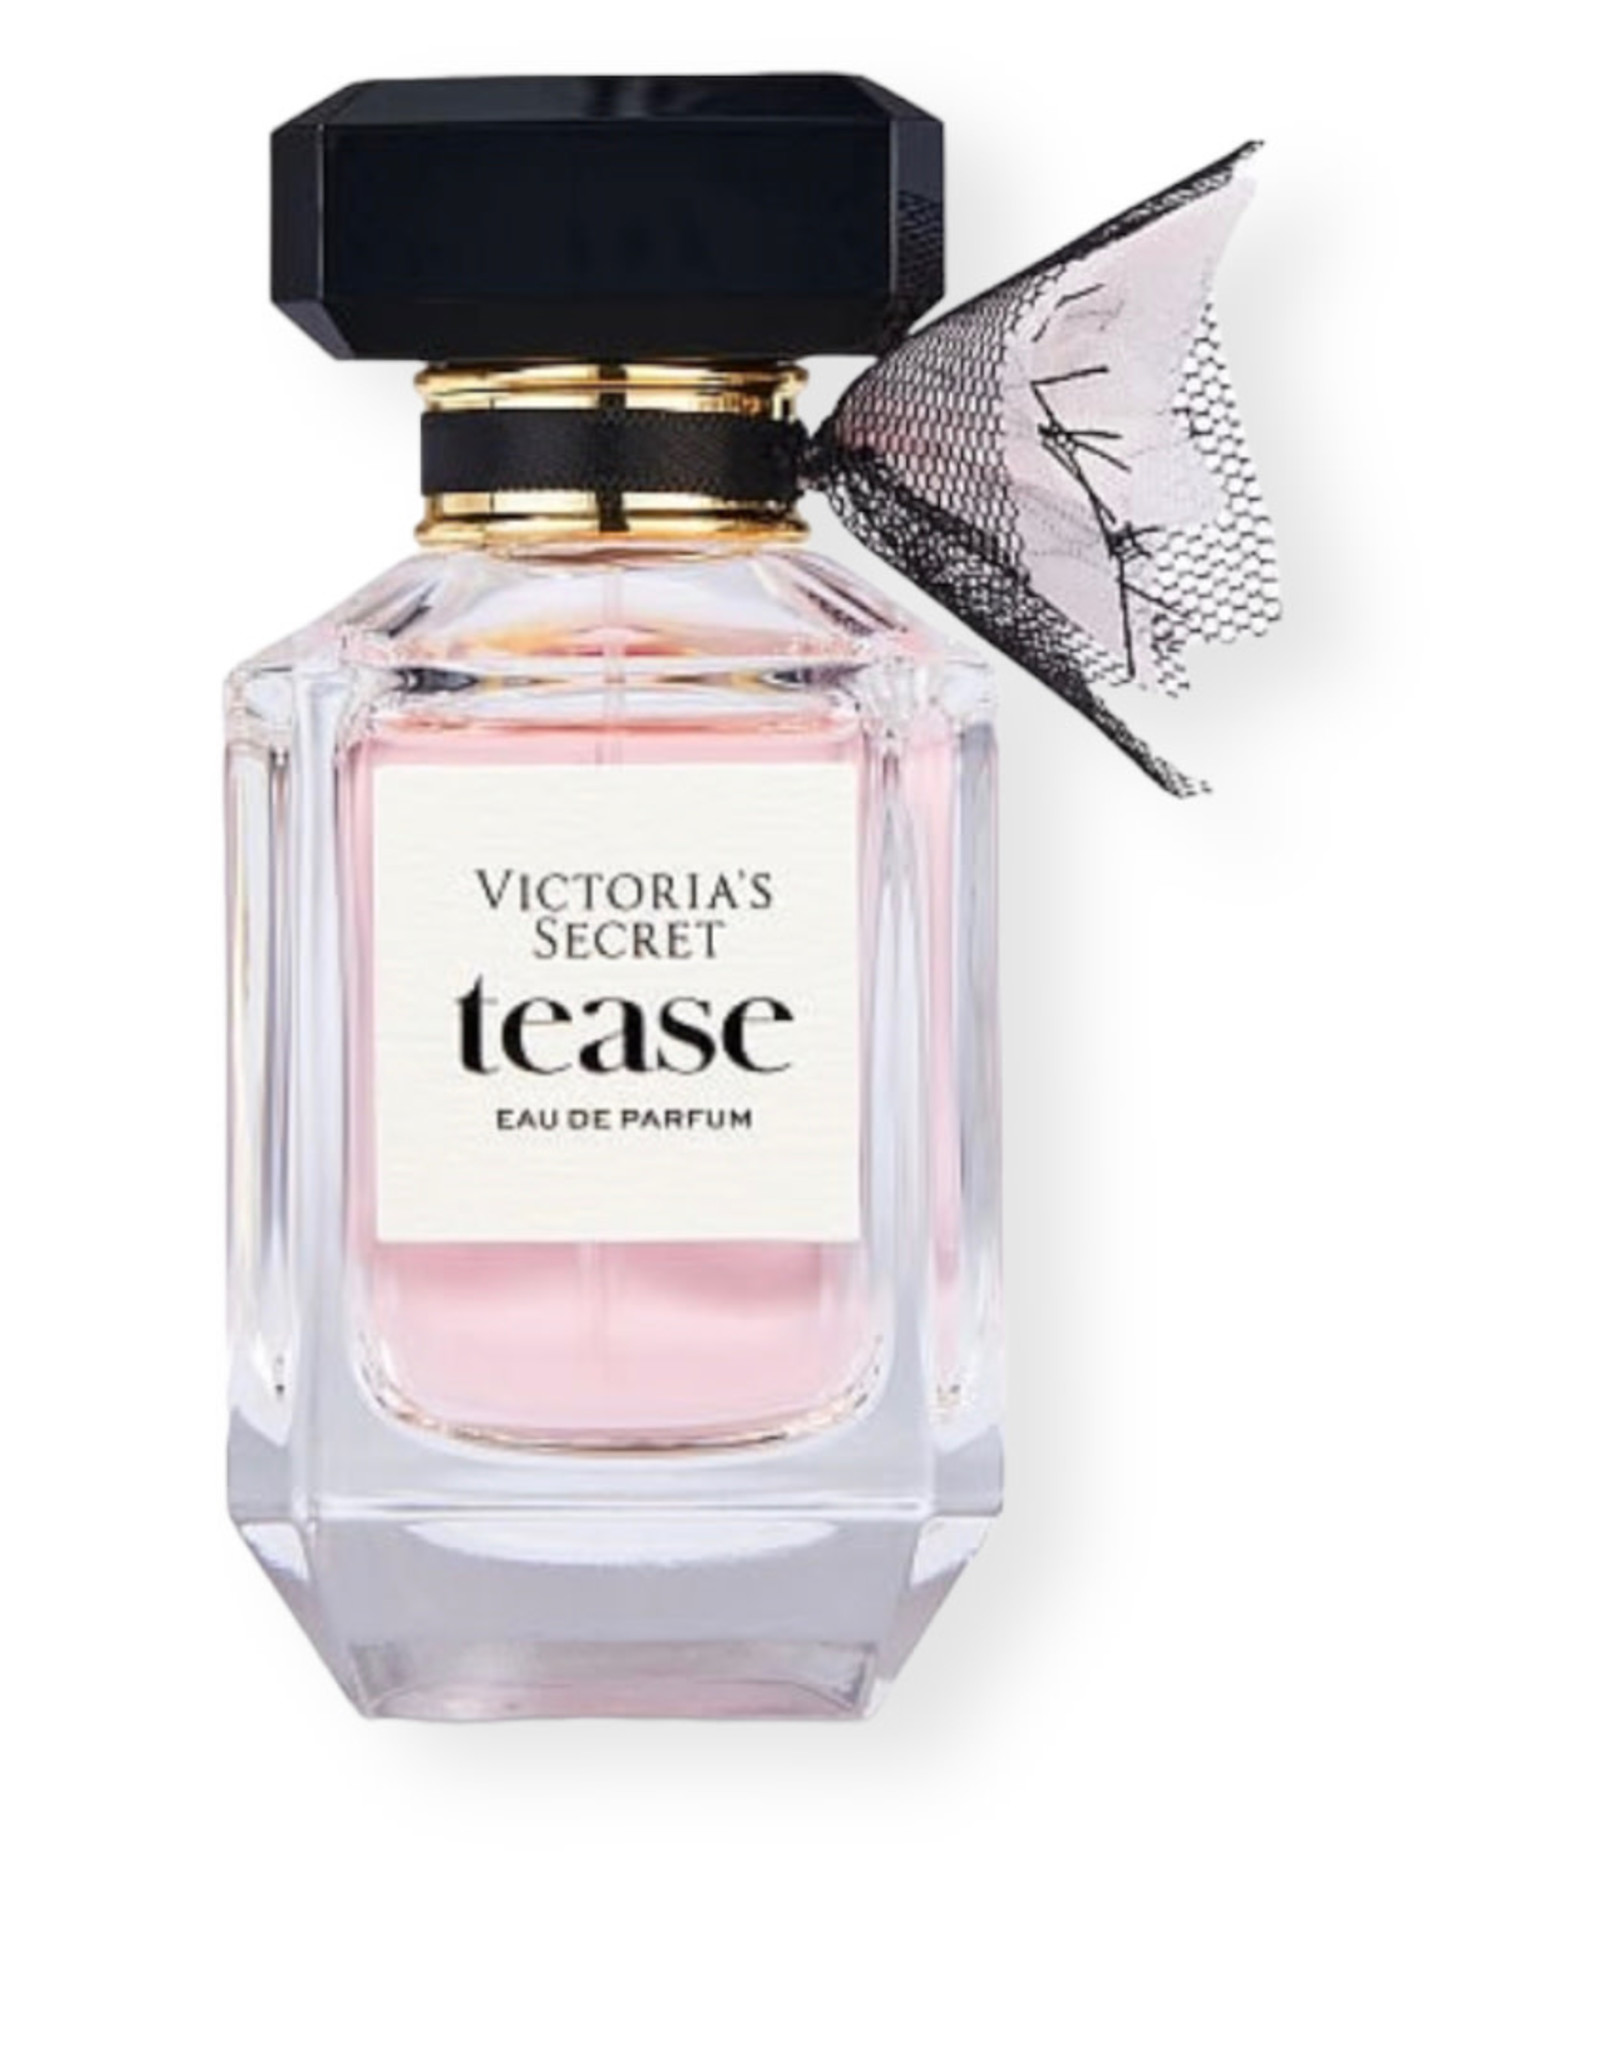 Victoria's Secret Victoria’s Secret Tease Eau de Parfum